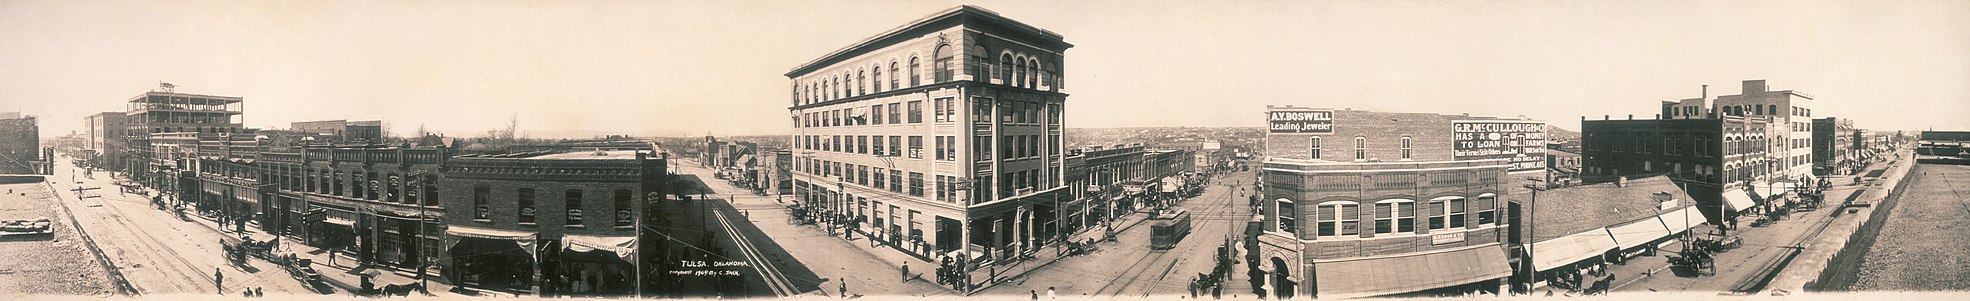 1909 Panoramic view of Tulsa, Oklahoma.